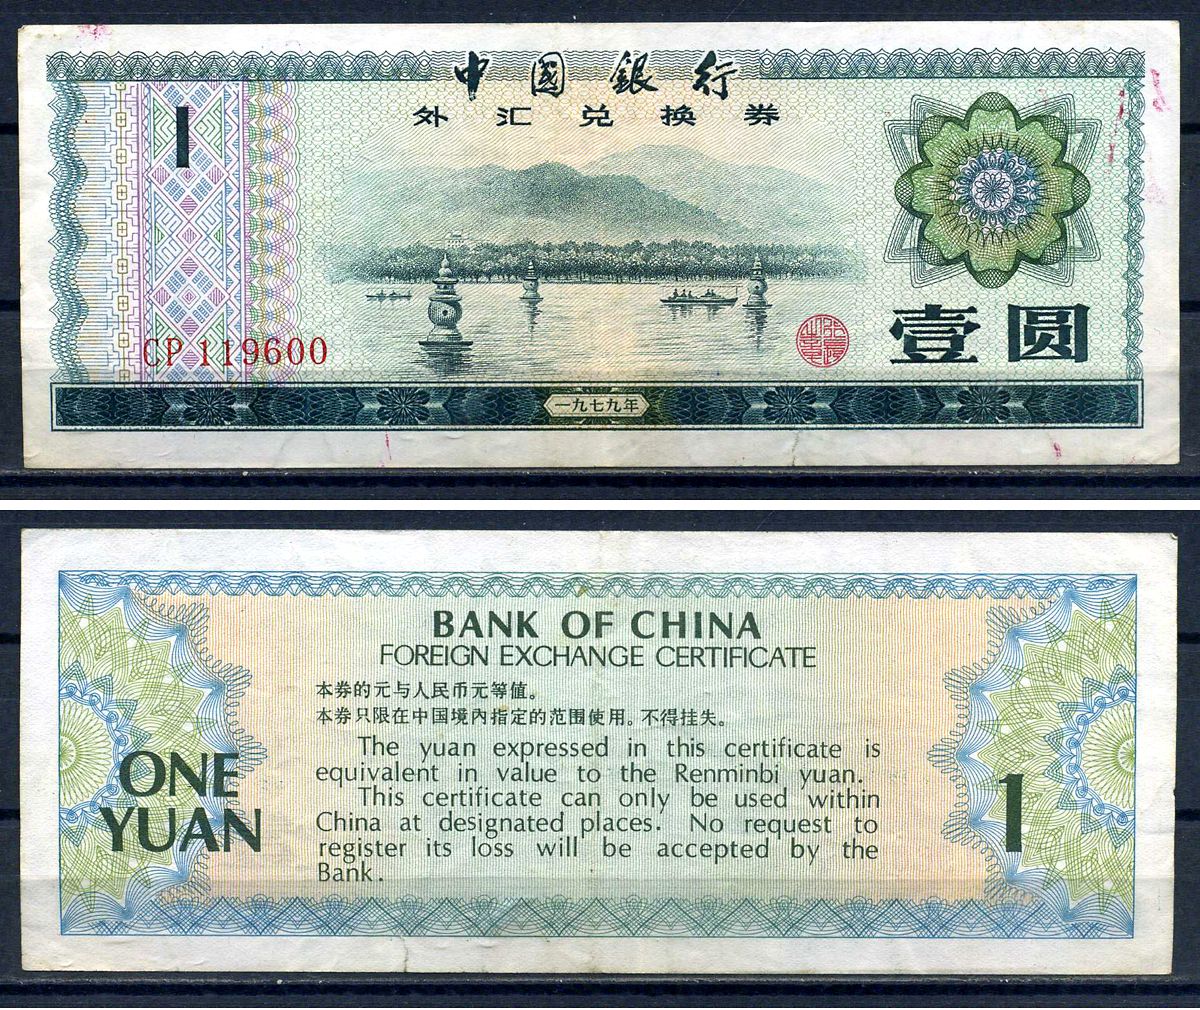 Китай 1979 валютный сертификат. Foreign Exchange Certificate Bank of China. Китайские юани код валюты. Облигации в юанях картинка.